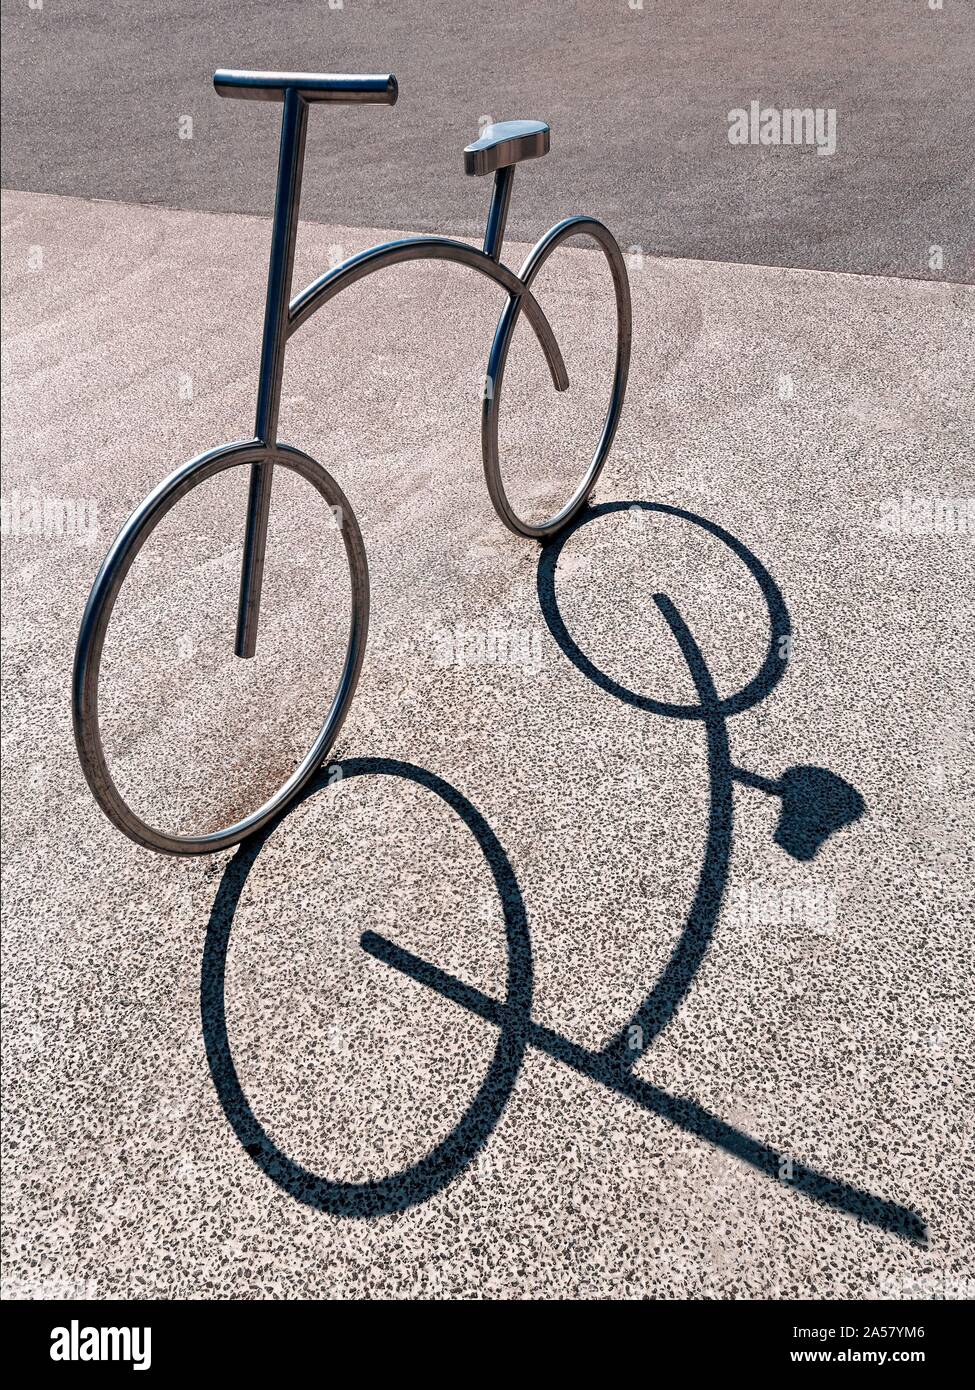 Bicicletta bicicletta stand, acciaio inossidabile parcheggio biciclette, getta l'ombra, Aalborg, nello Jutland, Danimarca Foto Stock